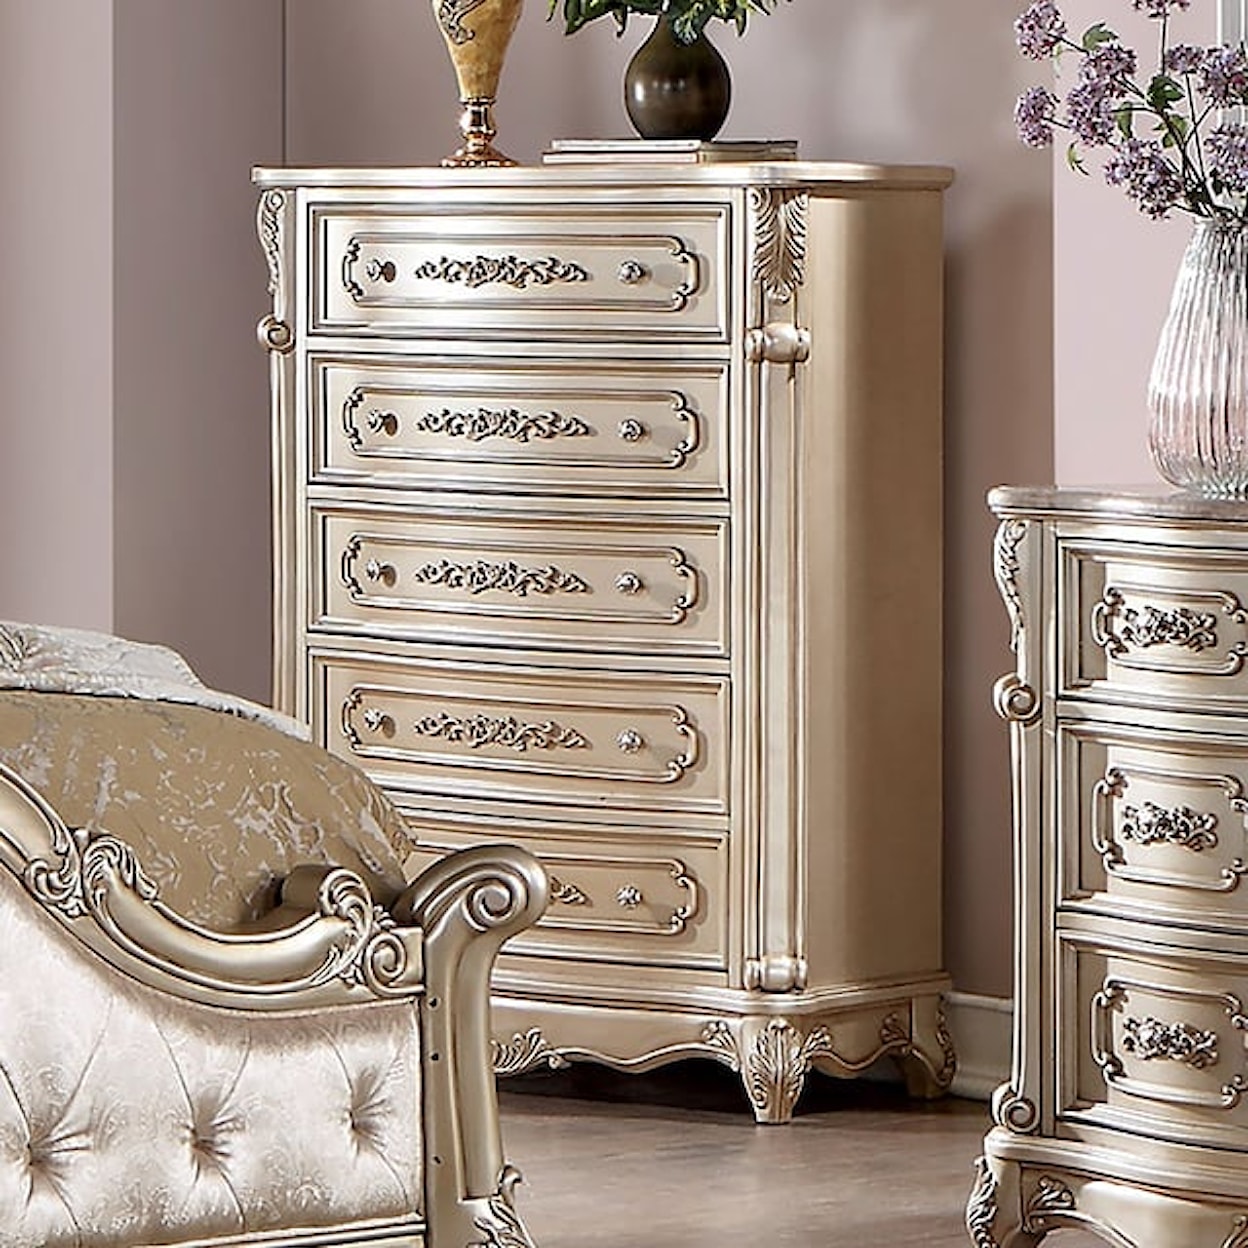 Furniture of America Rosalind Upholstered King Bedroom Set